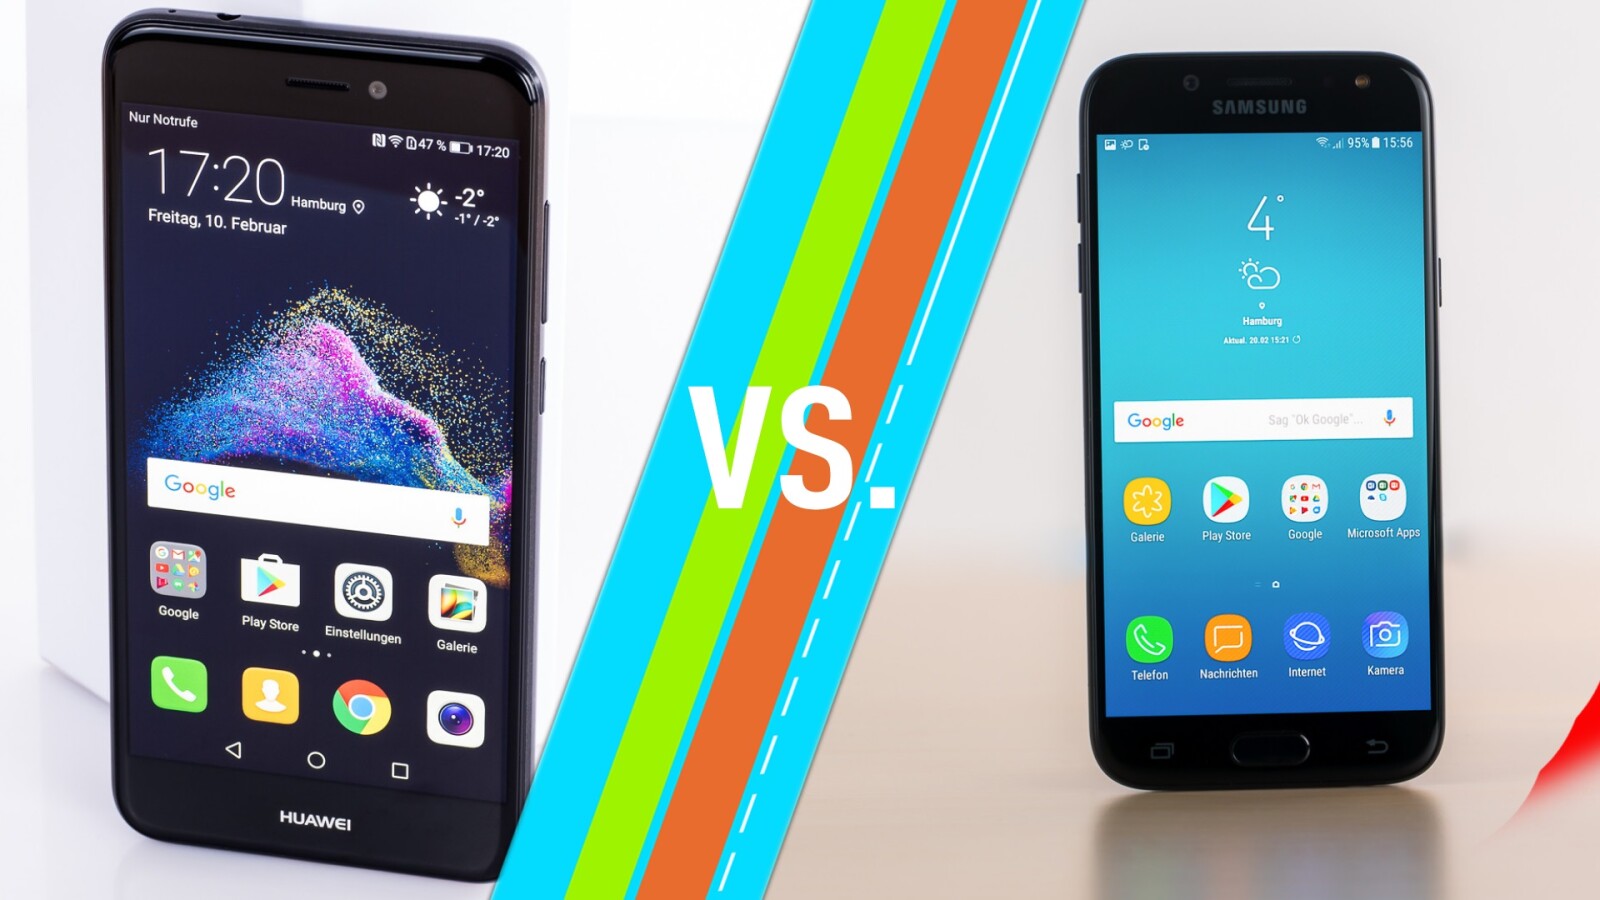 Huawei P8 lite 2017 vs. Samsung Galaxy J5 (2017) Duos ... - 1600 x 900 jpeg 186kB